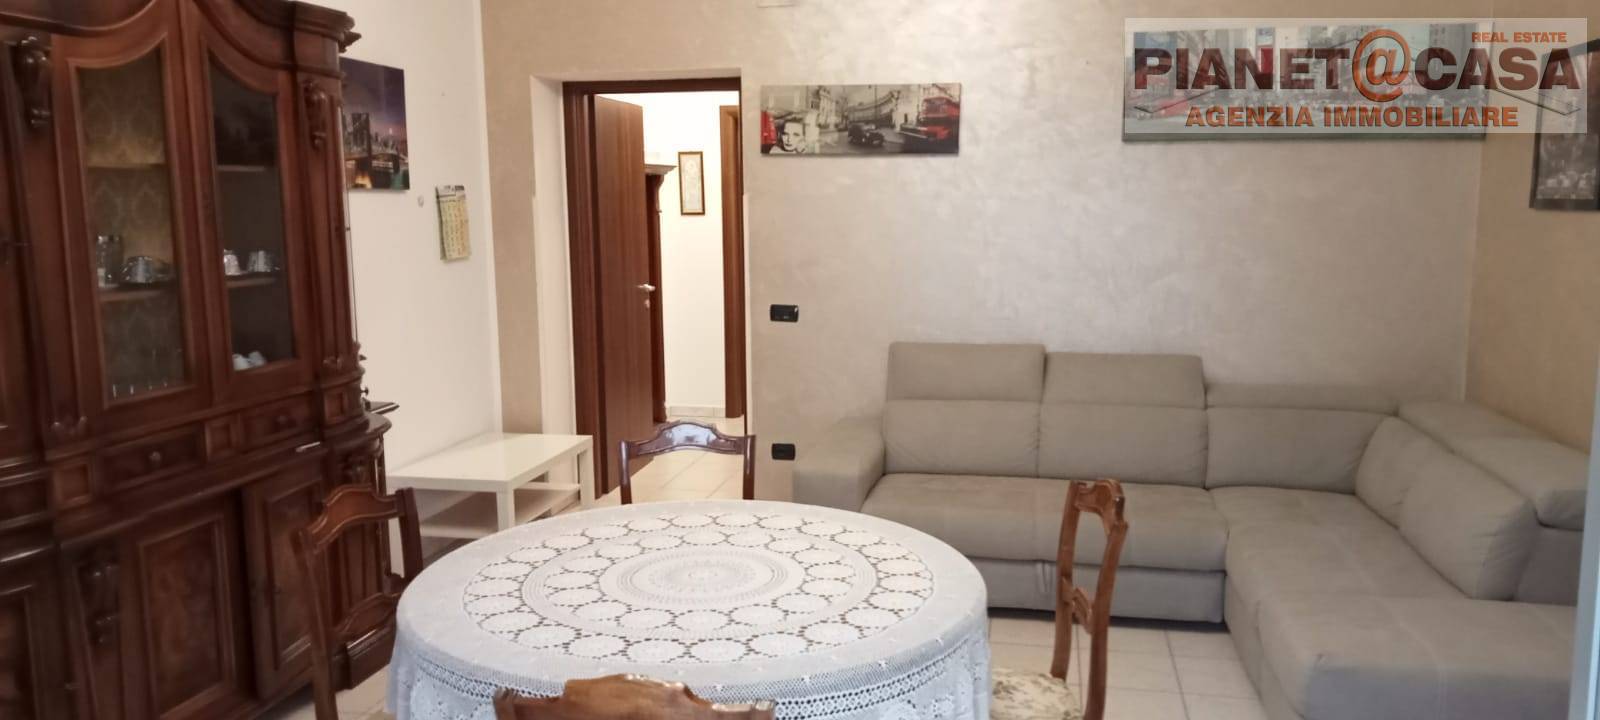 Appartamento in vendita a Ancarano, 3 locali, prezzo € 55.000 | CambioCasa.it